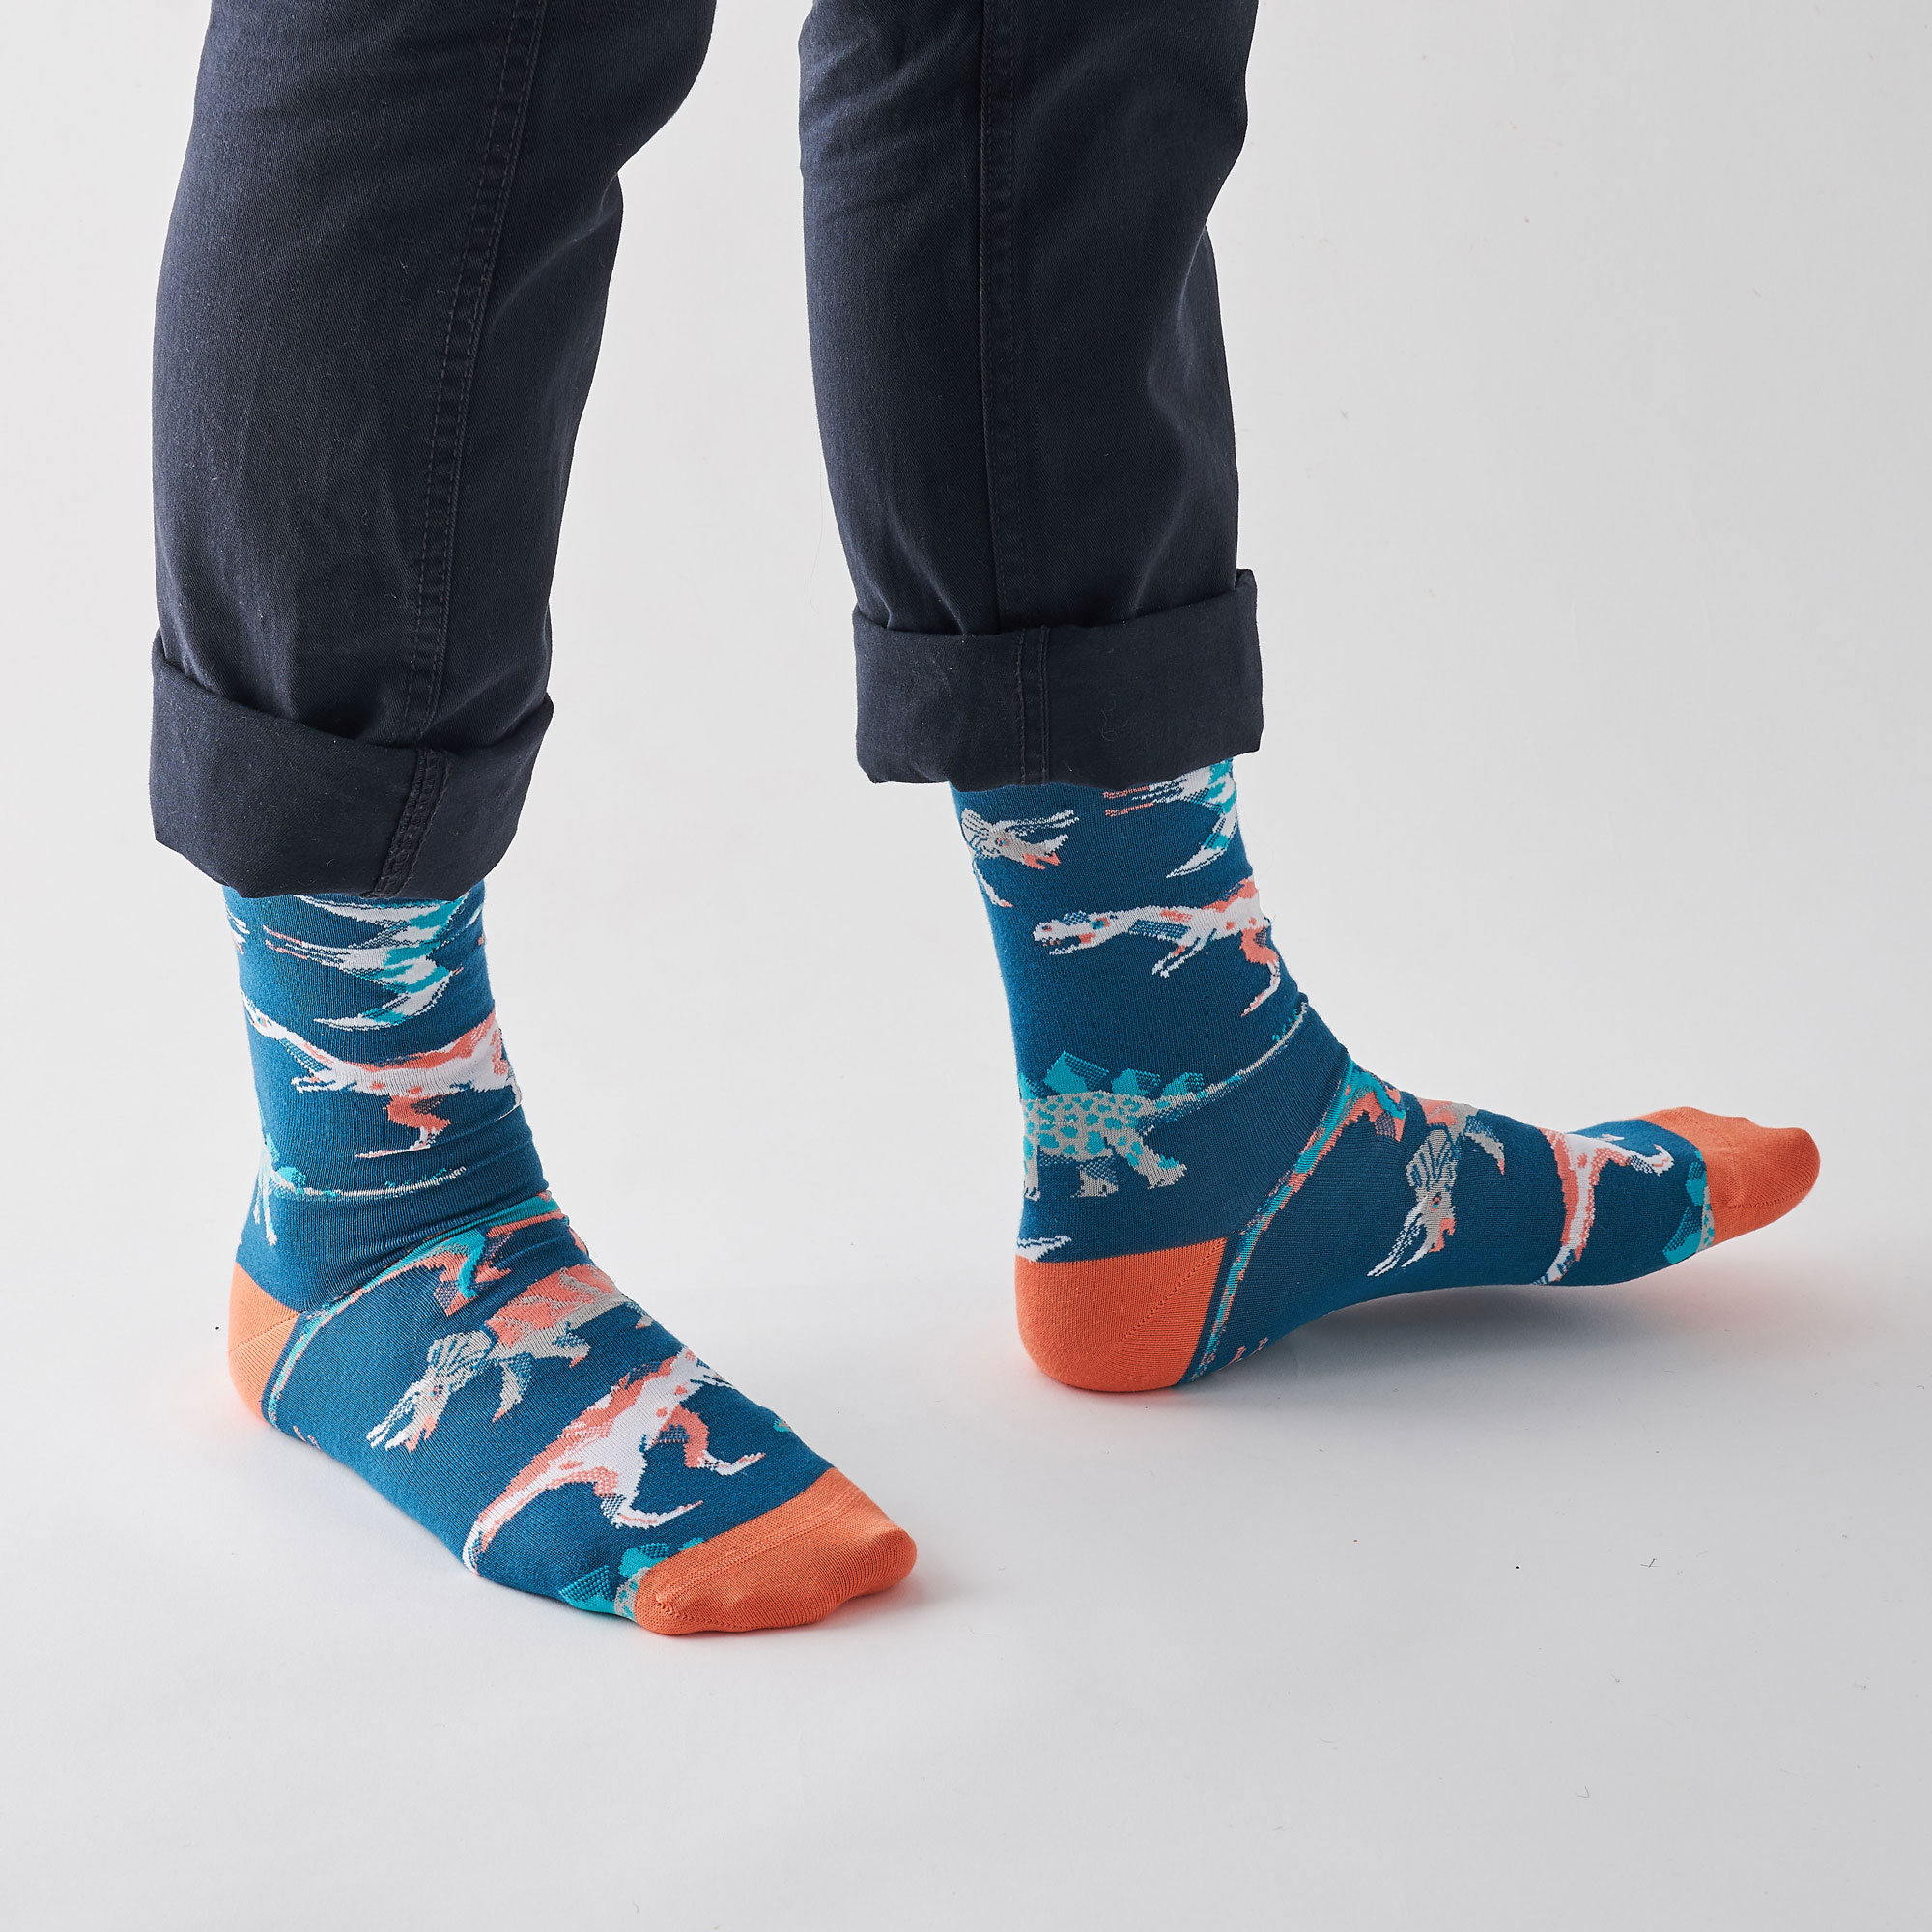 James Barker — Dinosaur Socks